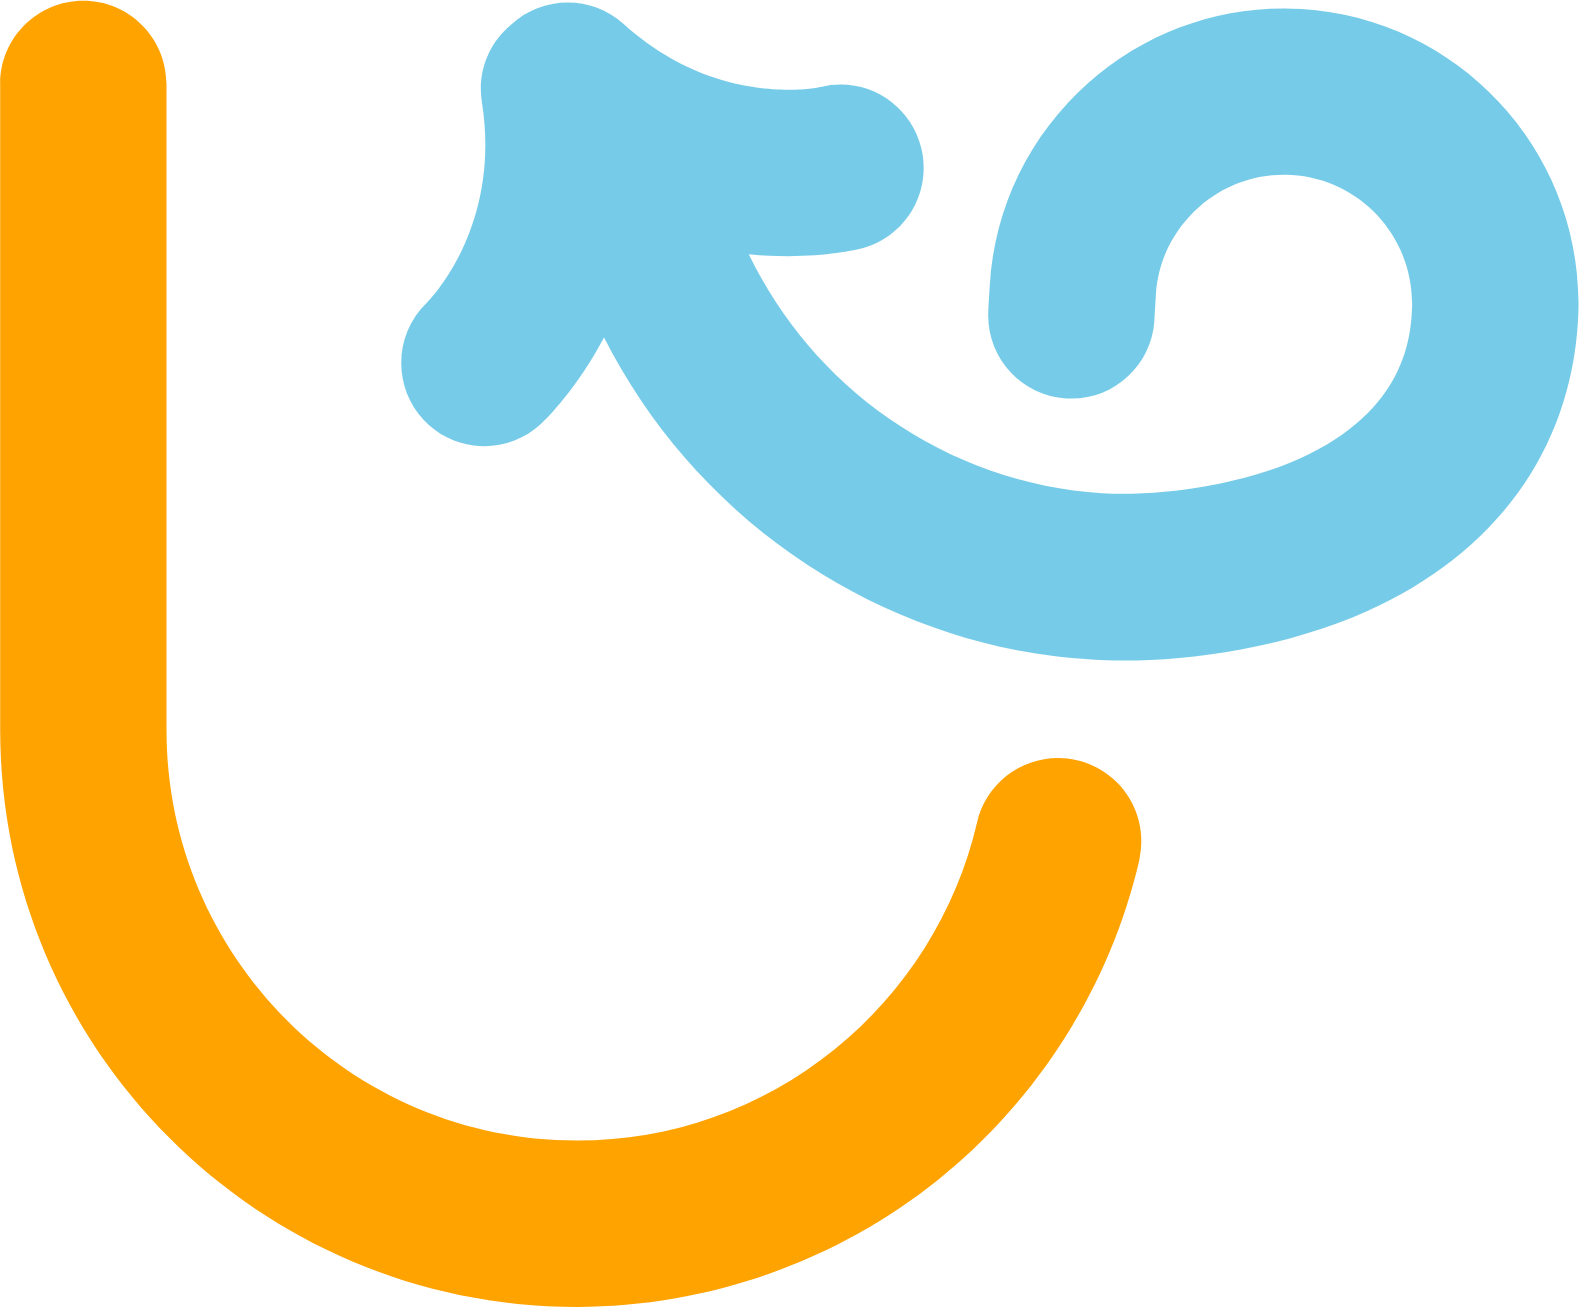 Upexi logo (transparent PNG)